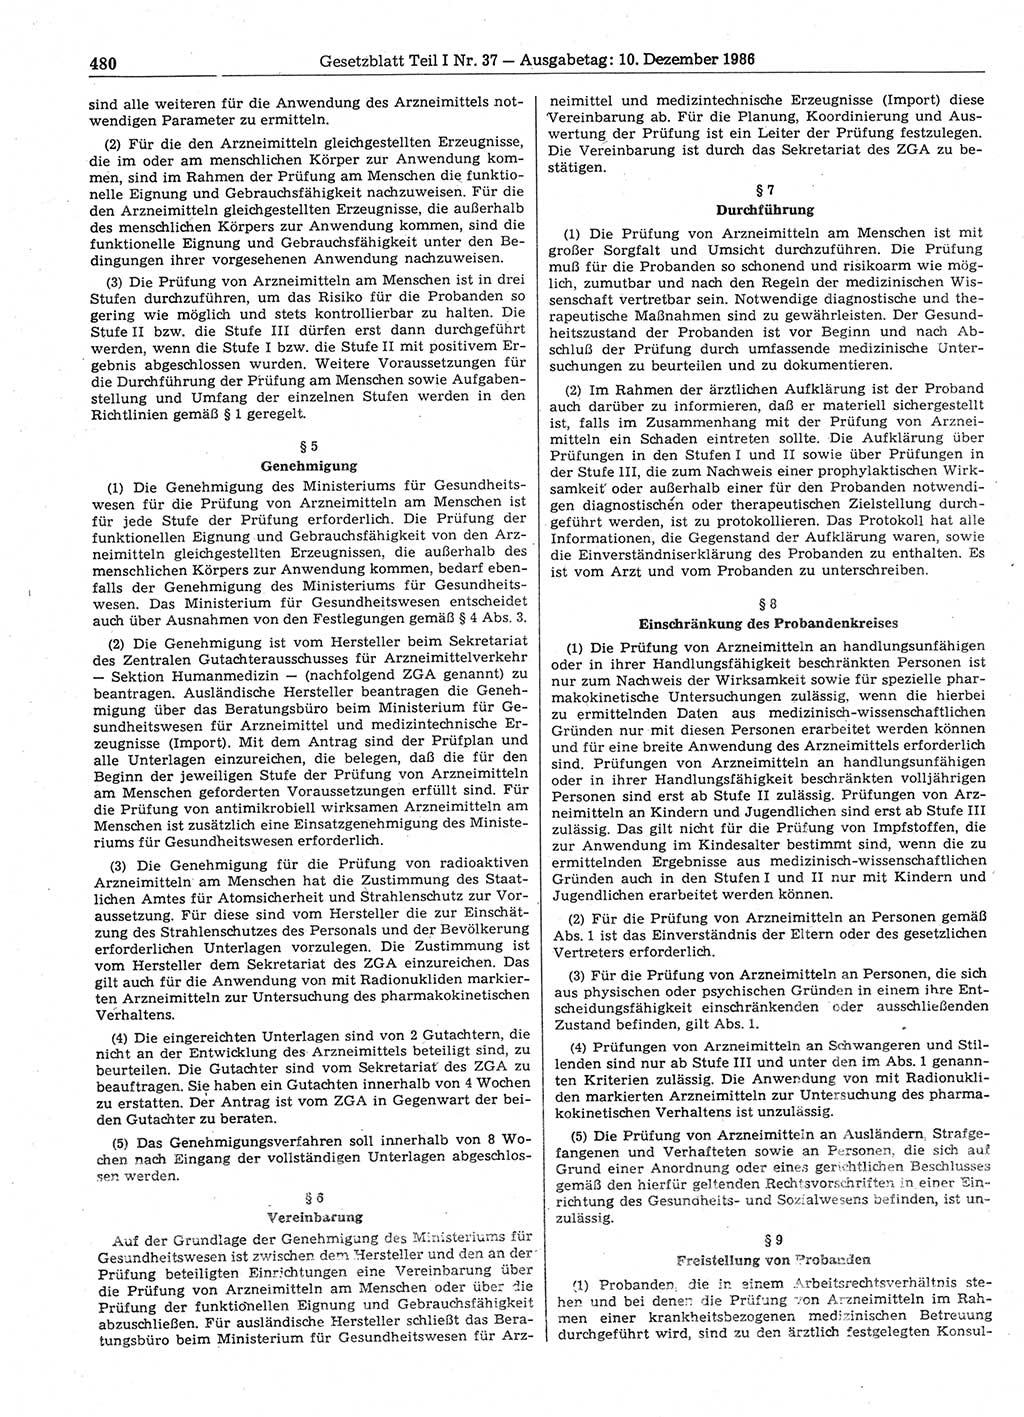 Gesetzblatt (GBl.) der Deutschen Demokratischen Republik (DDR) Teil Ⅰ 1986, Seite 480 (GBl. DDR Ⅰ 1986, S. 480)